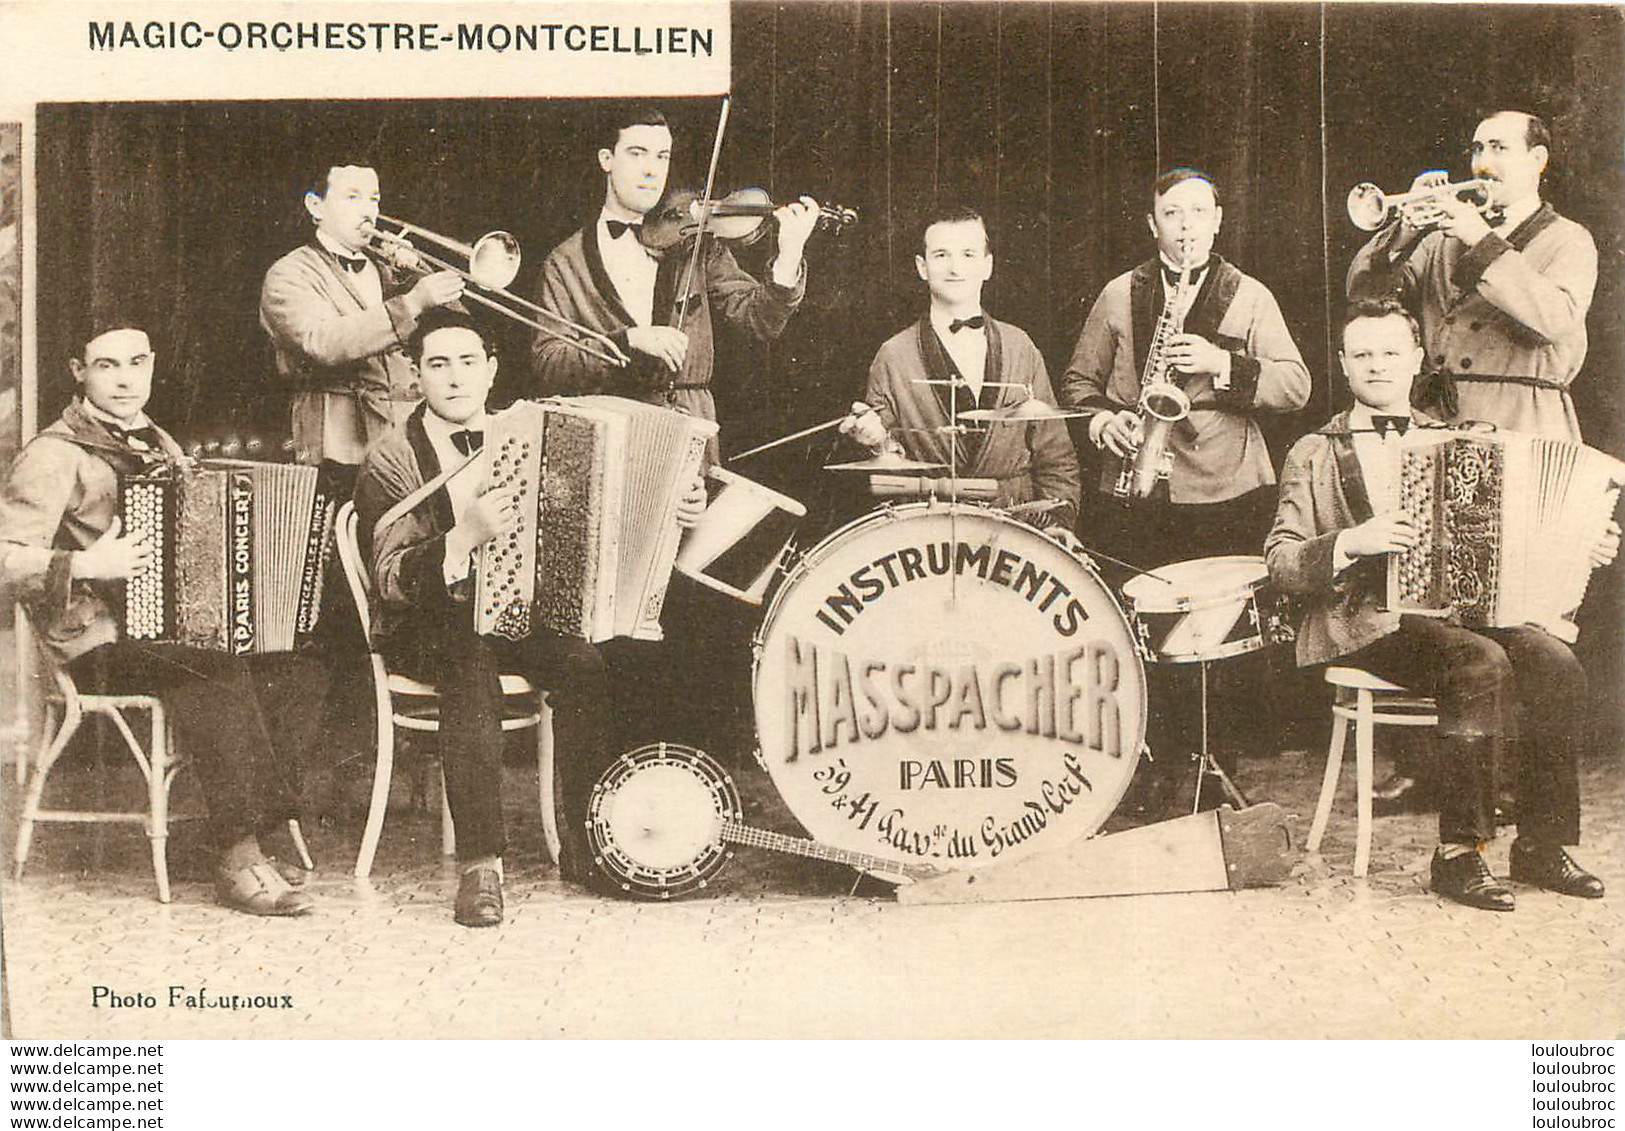 MONTCEAU LES MINES MAGIC ORCHESTRE MONTCELLIEN INSTRUMENTS MASSPACHER - Montceau Les Mines